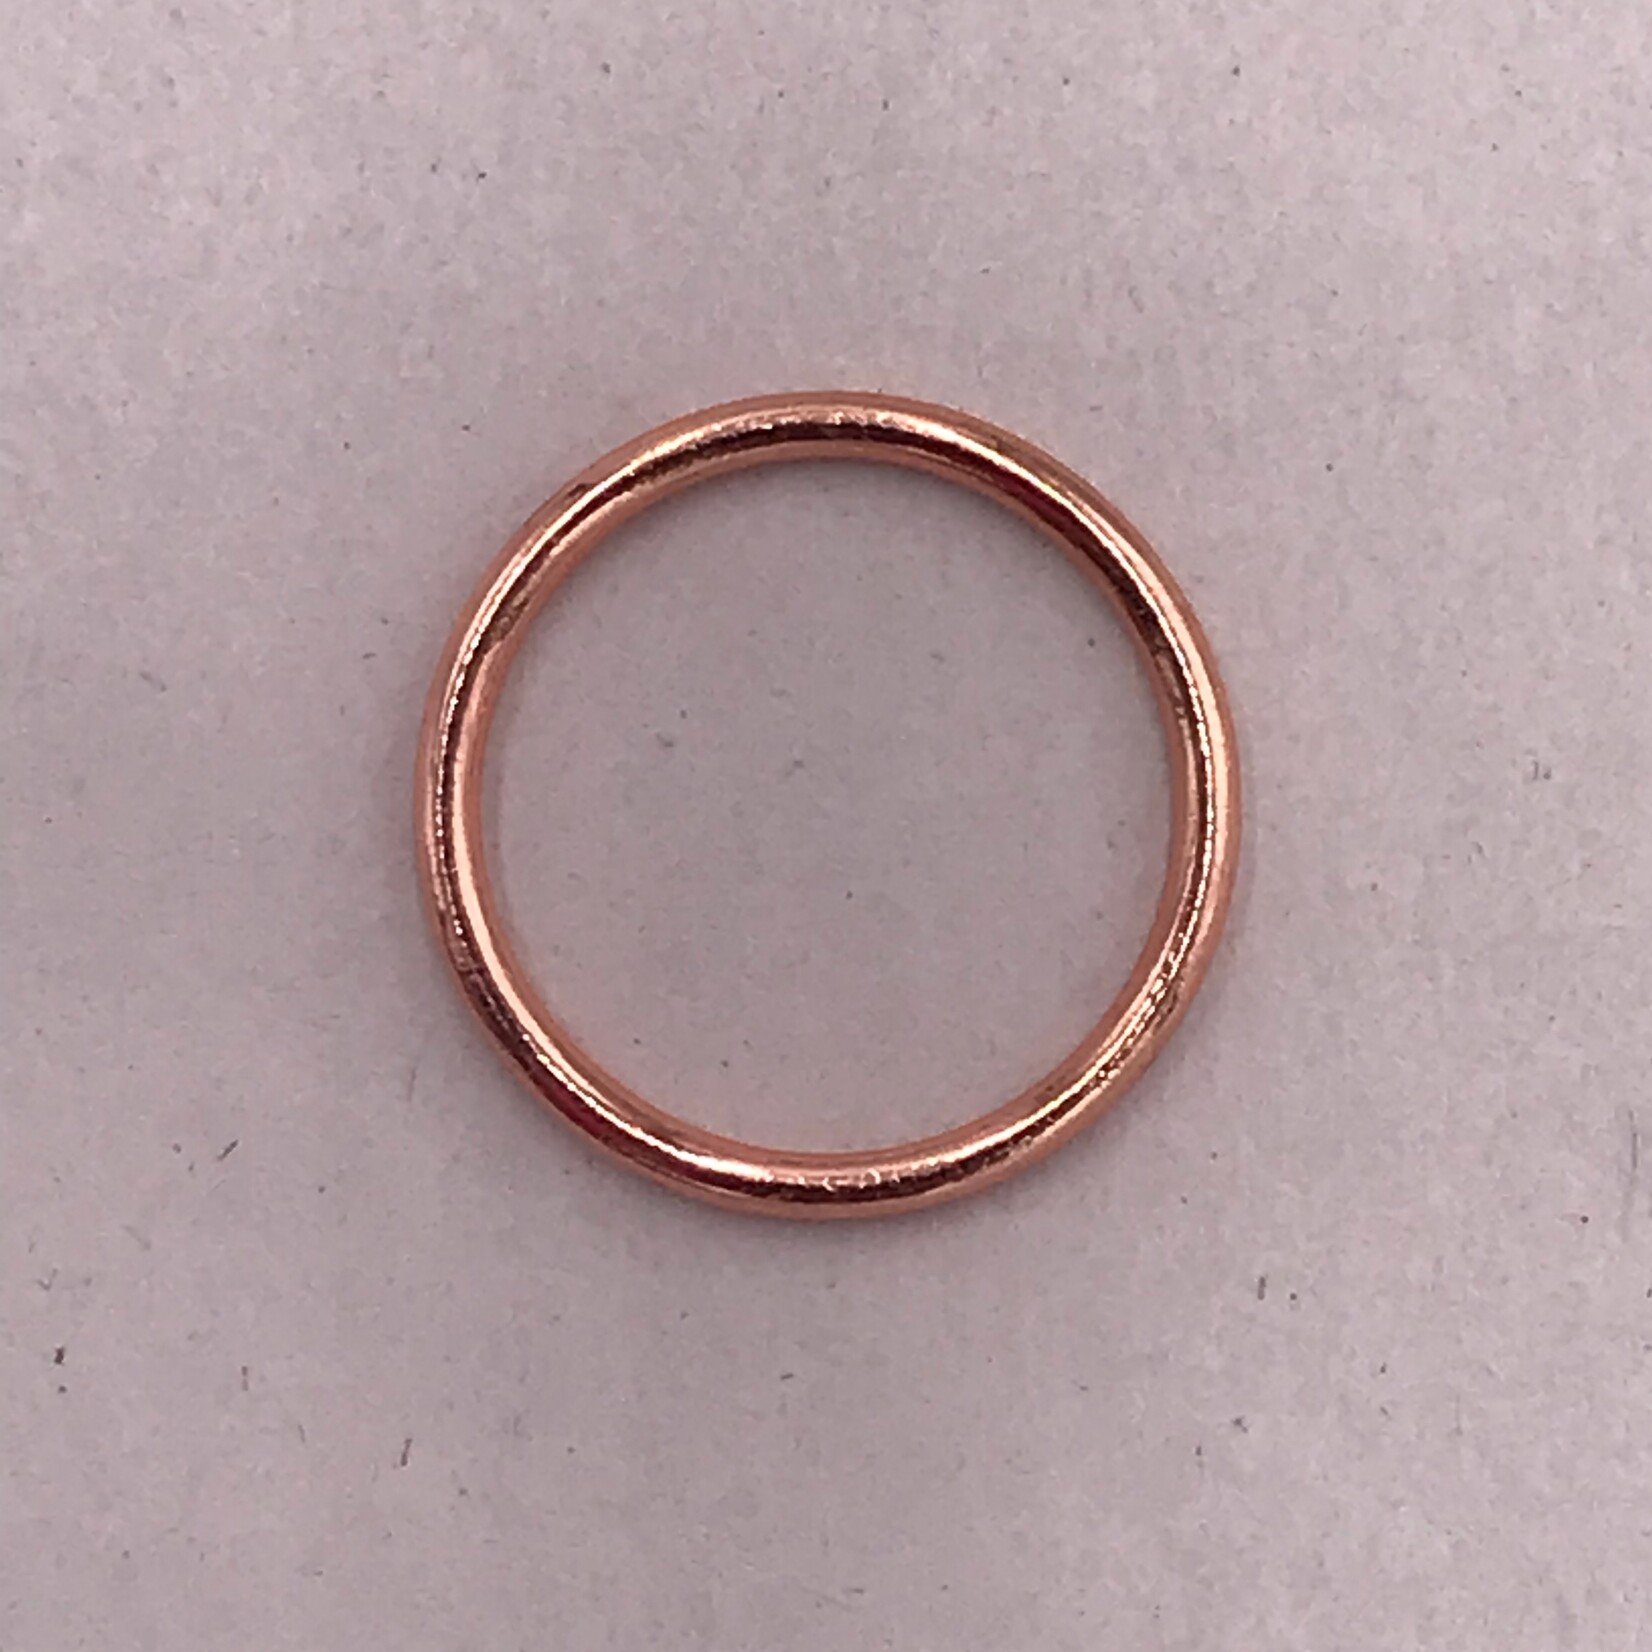 BRA O-RINGS (16MM) 5/8 INCH (1500PCS/PACK) - ROSE GOLD